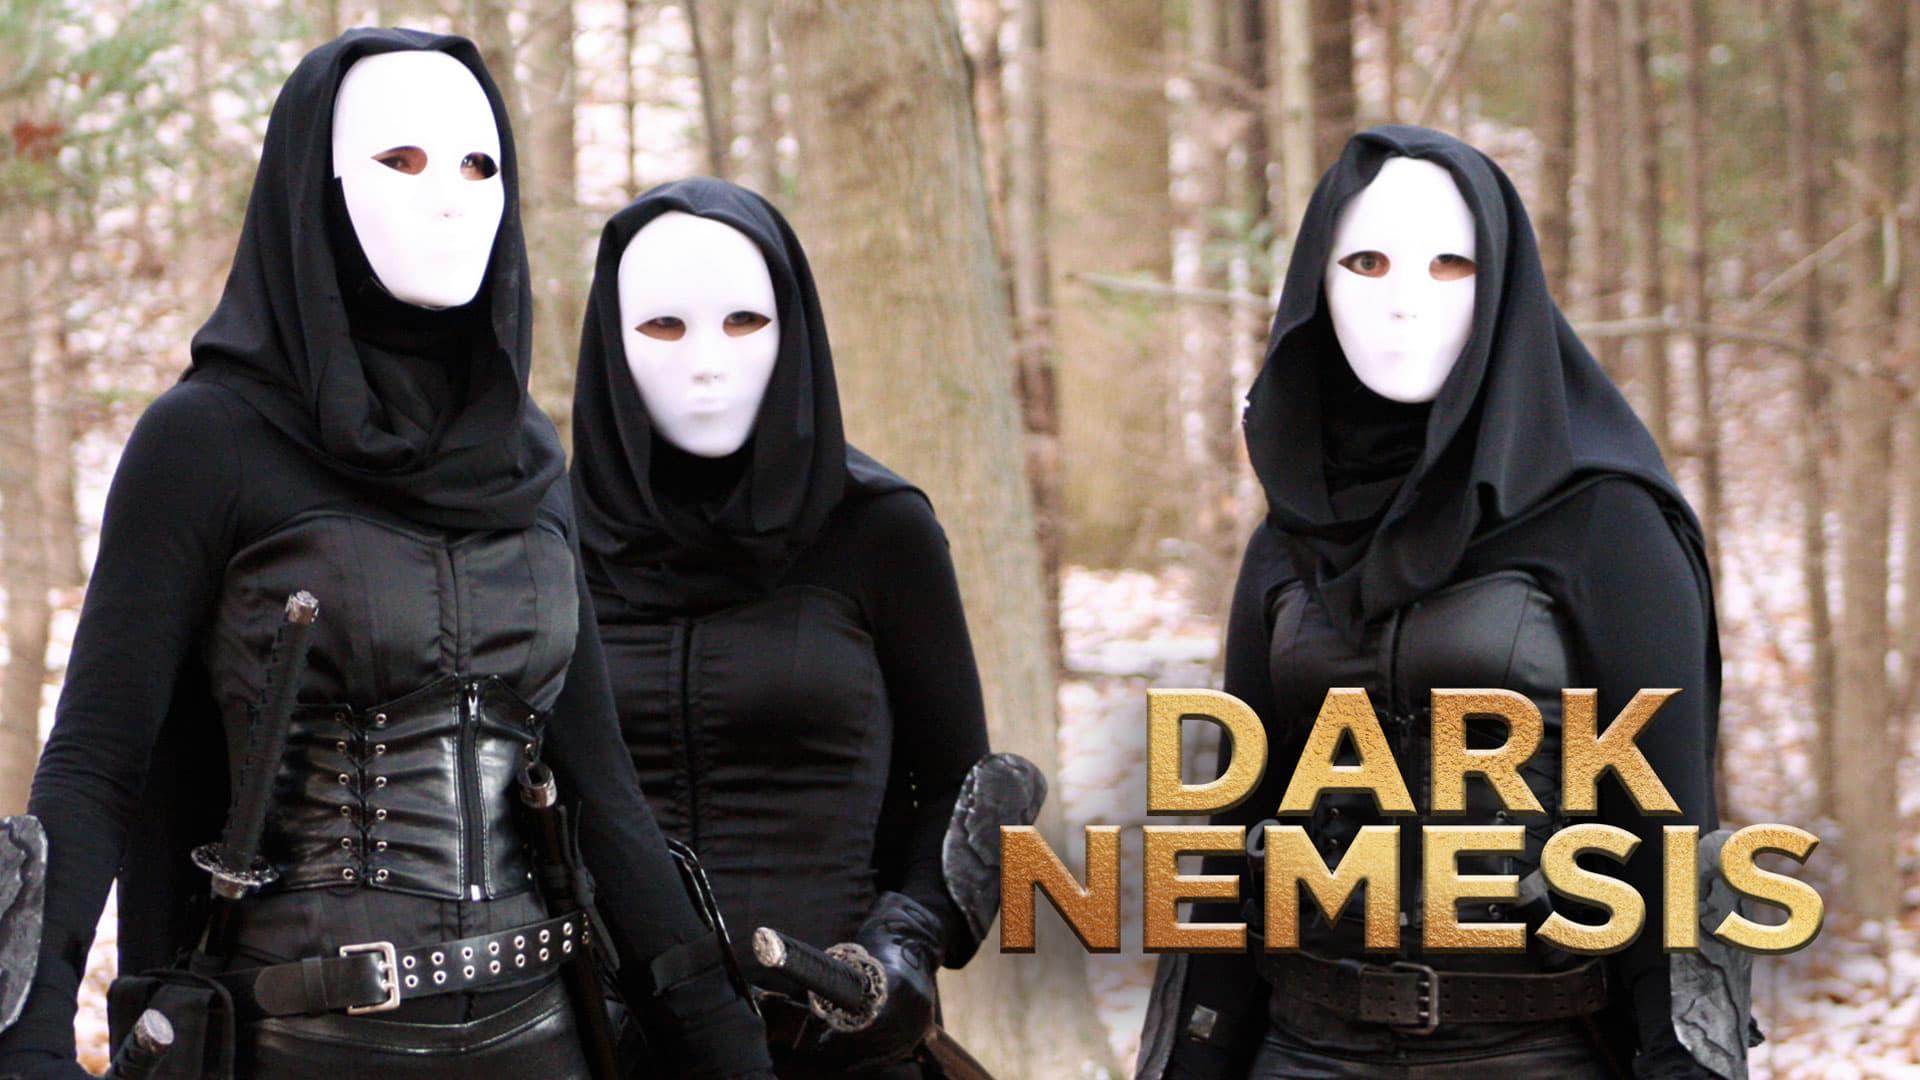 Dark Nemesis backdrop